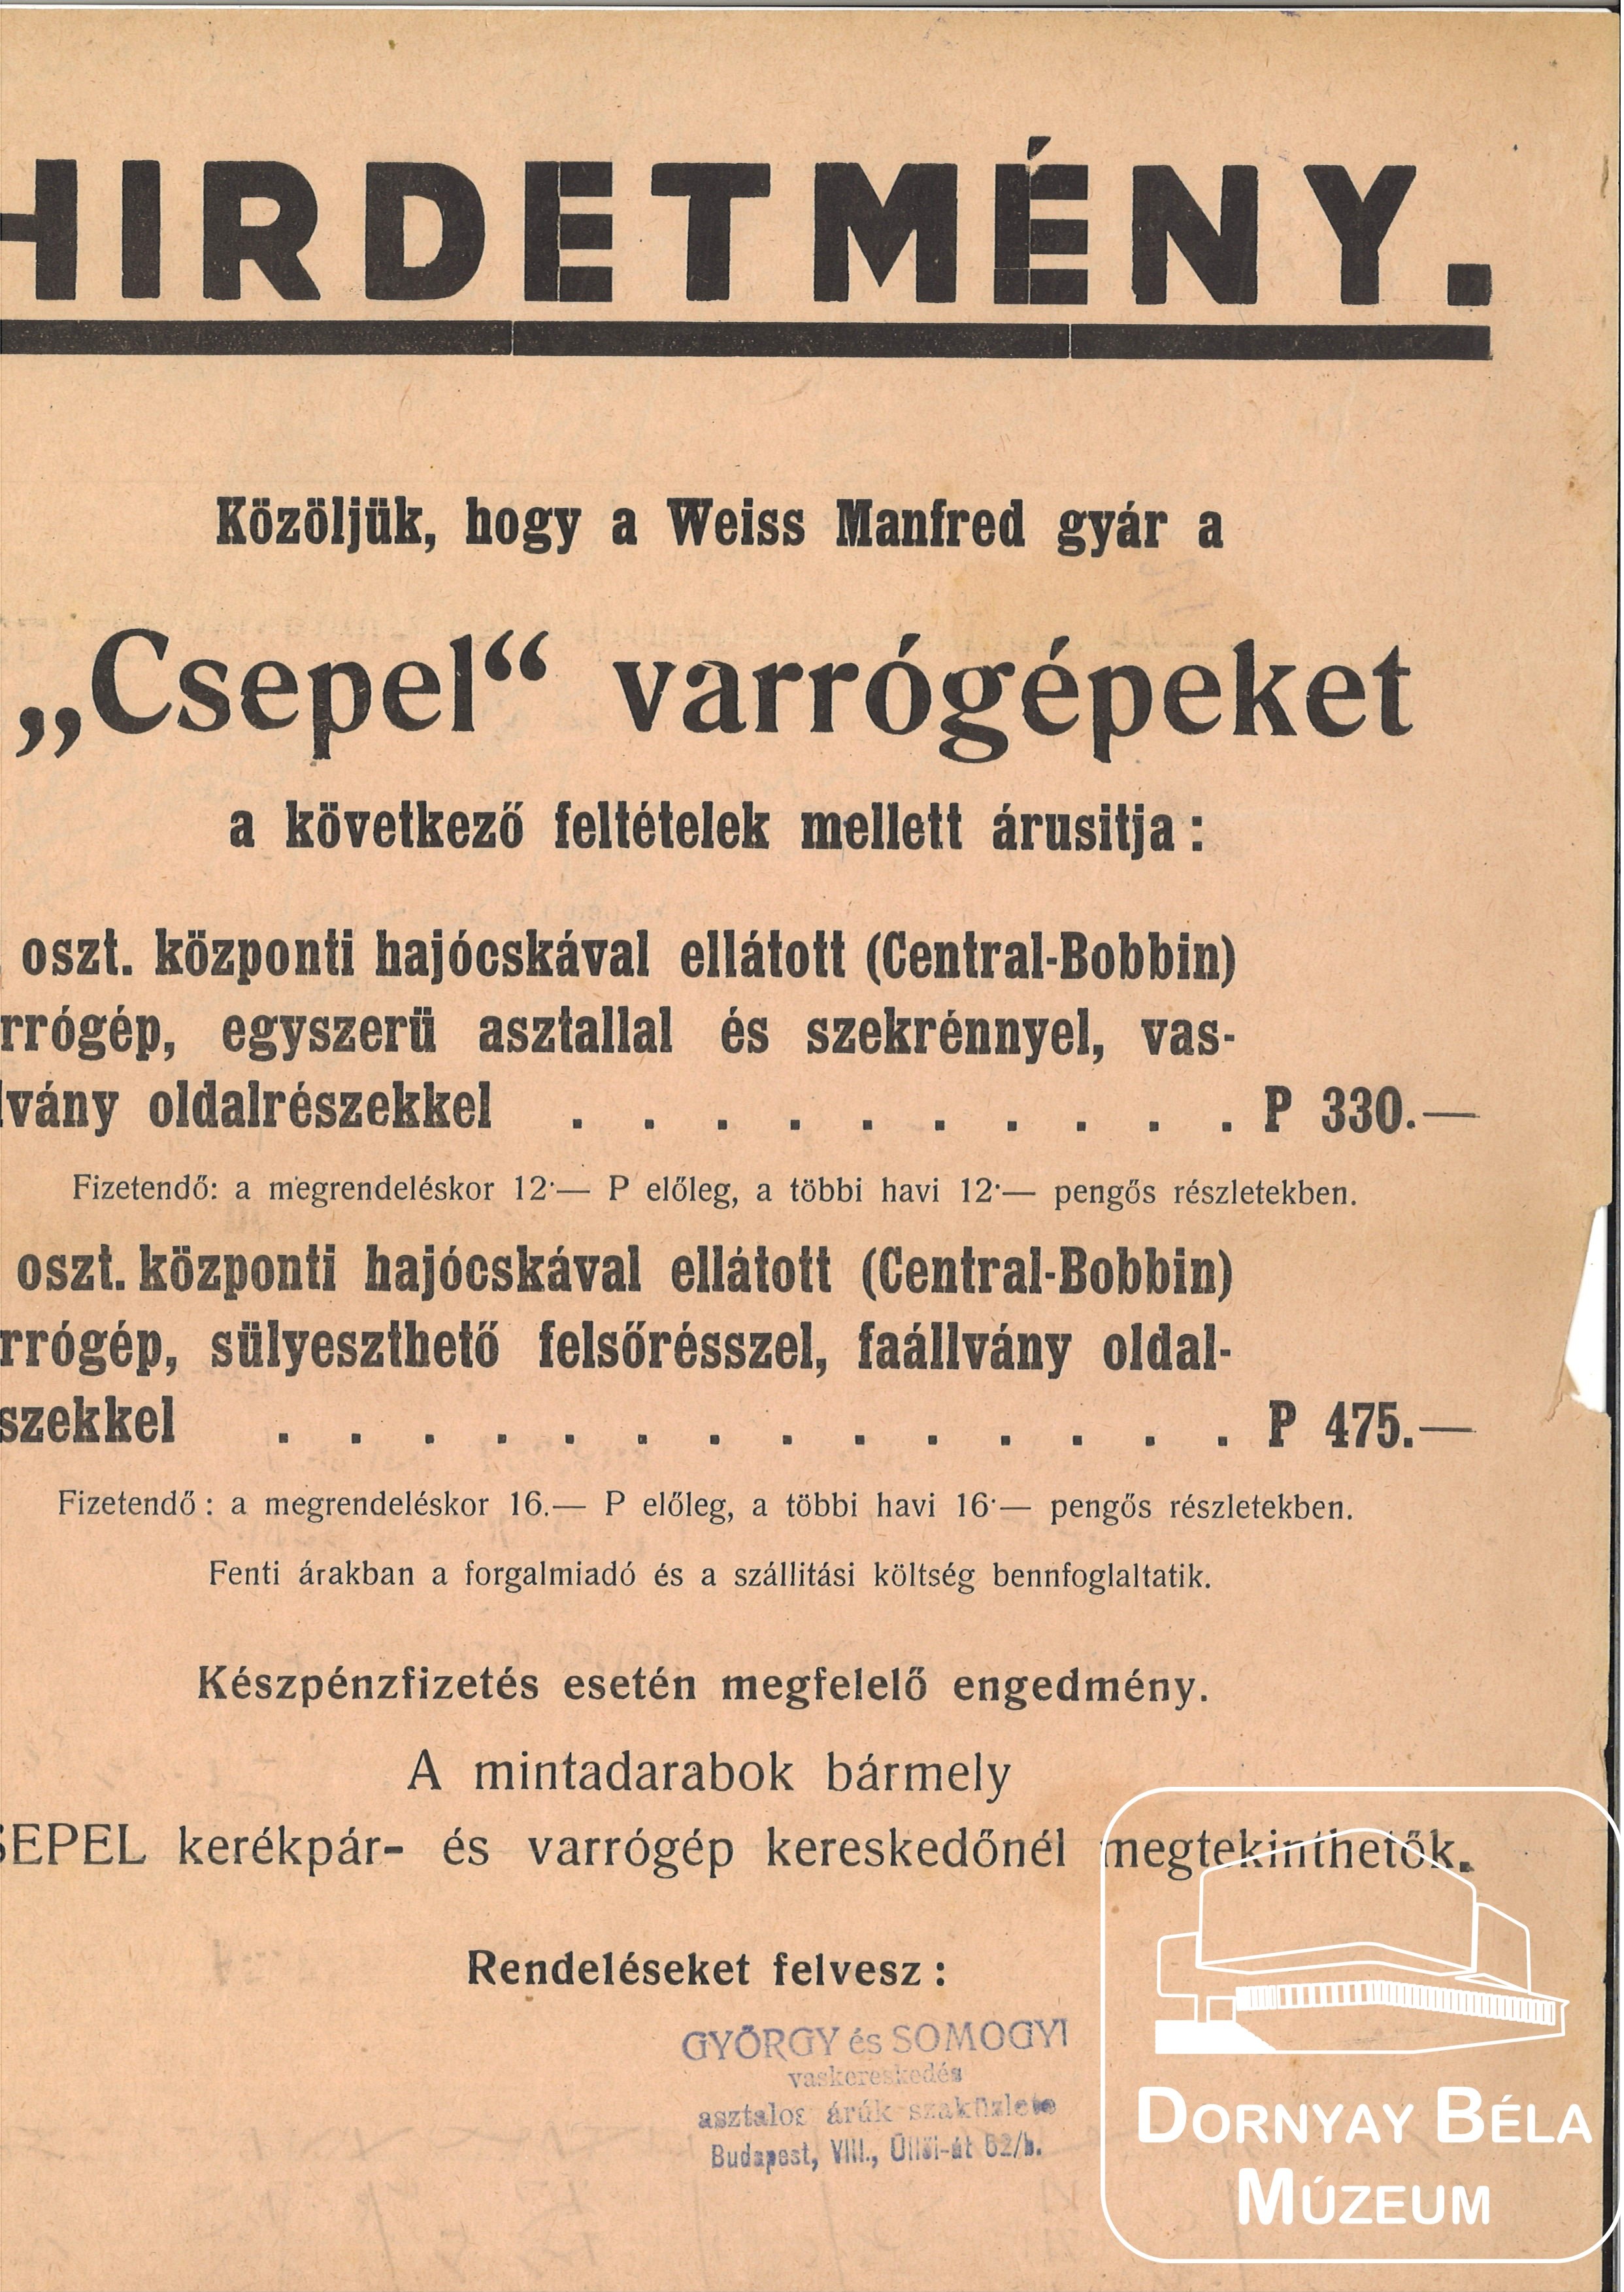 Hirdetmény. György és Somogyi vaskereskedésének hirdetménye. (Dornyay Béla Múzeum, Salgótarján CC BY-NC-SA)